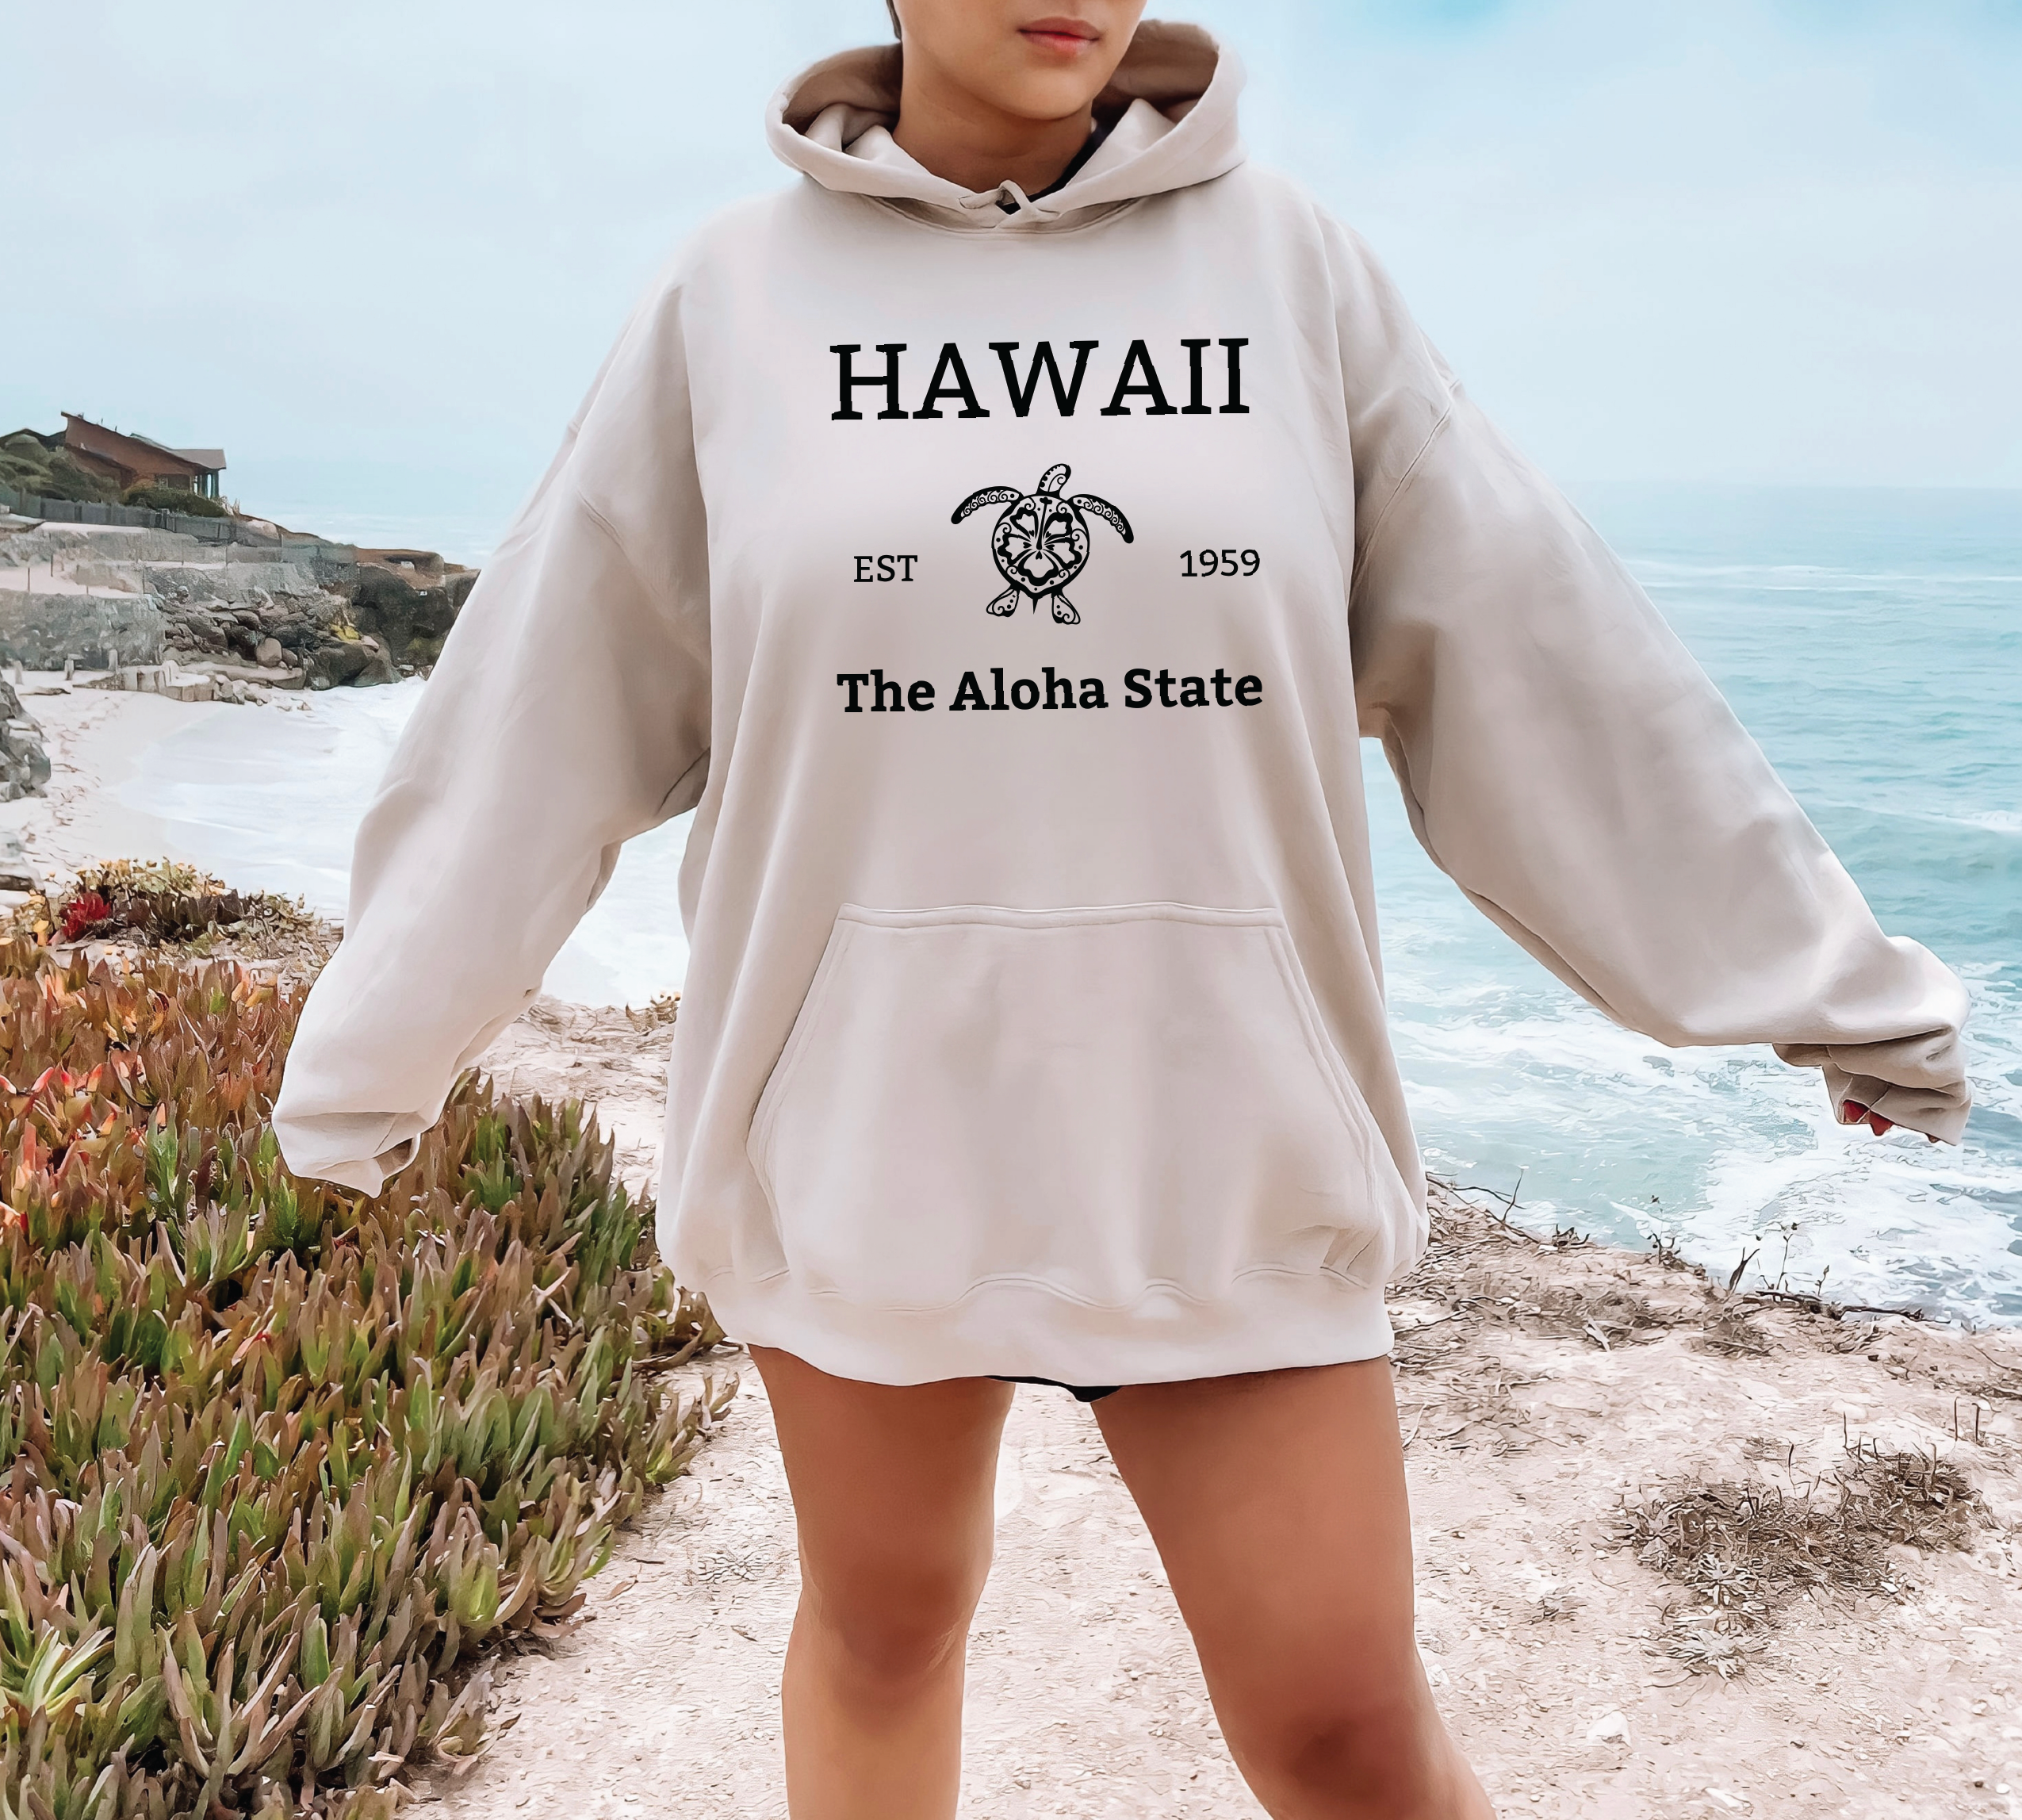 Hawaii Apparel